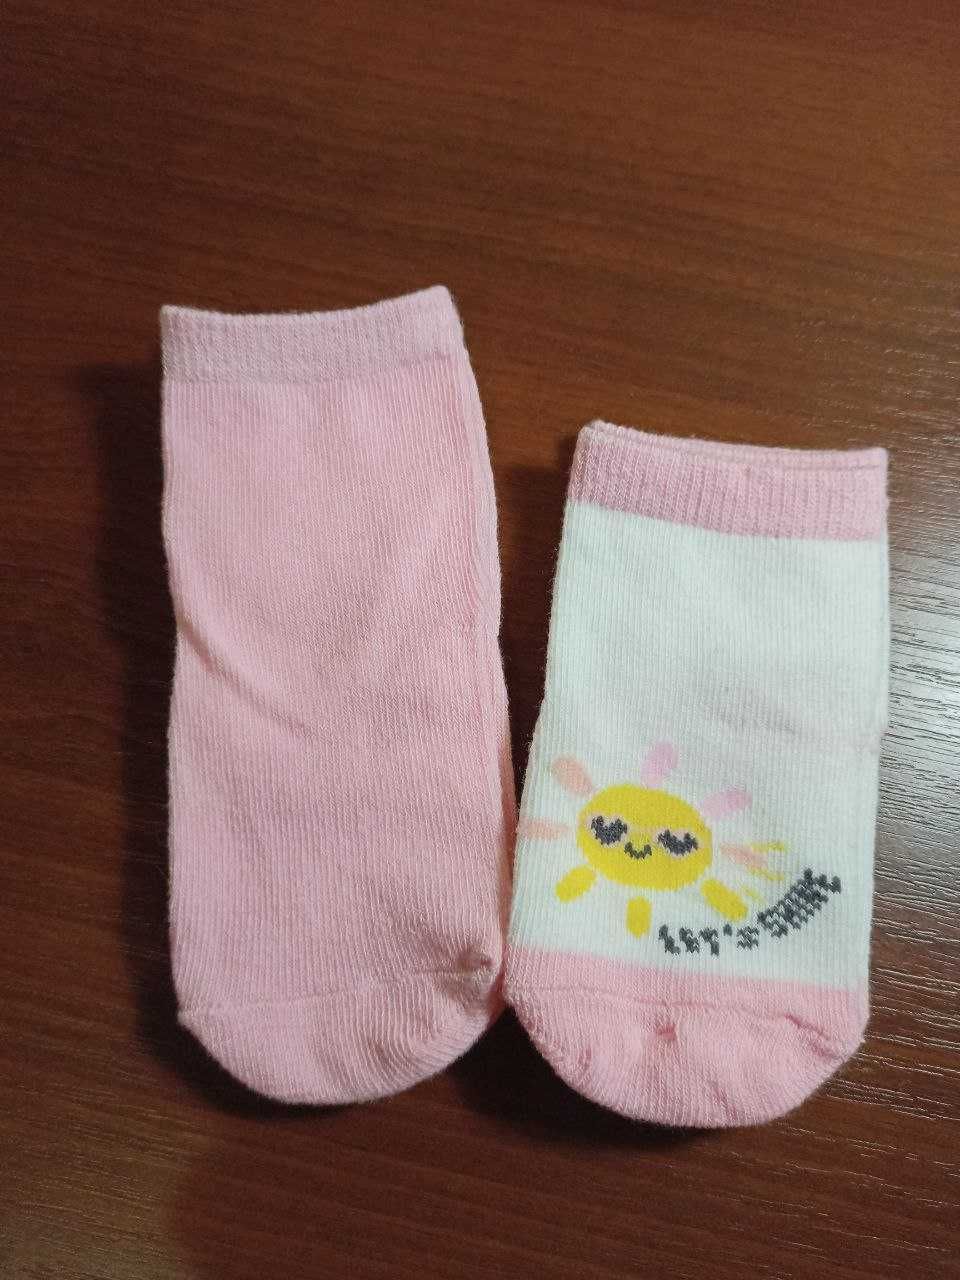 Носки детски, детские носочки 0/14  месяцев, носочки для новорожденных